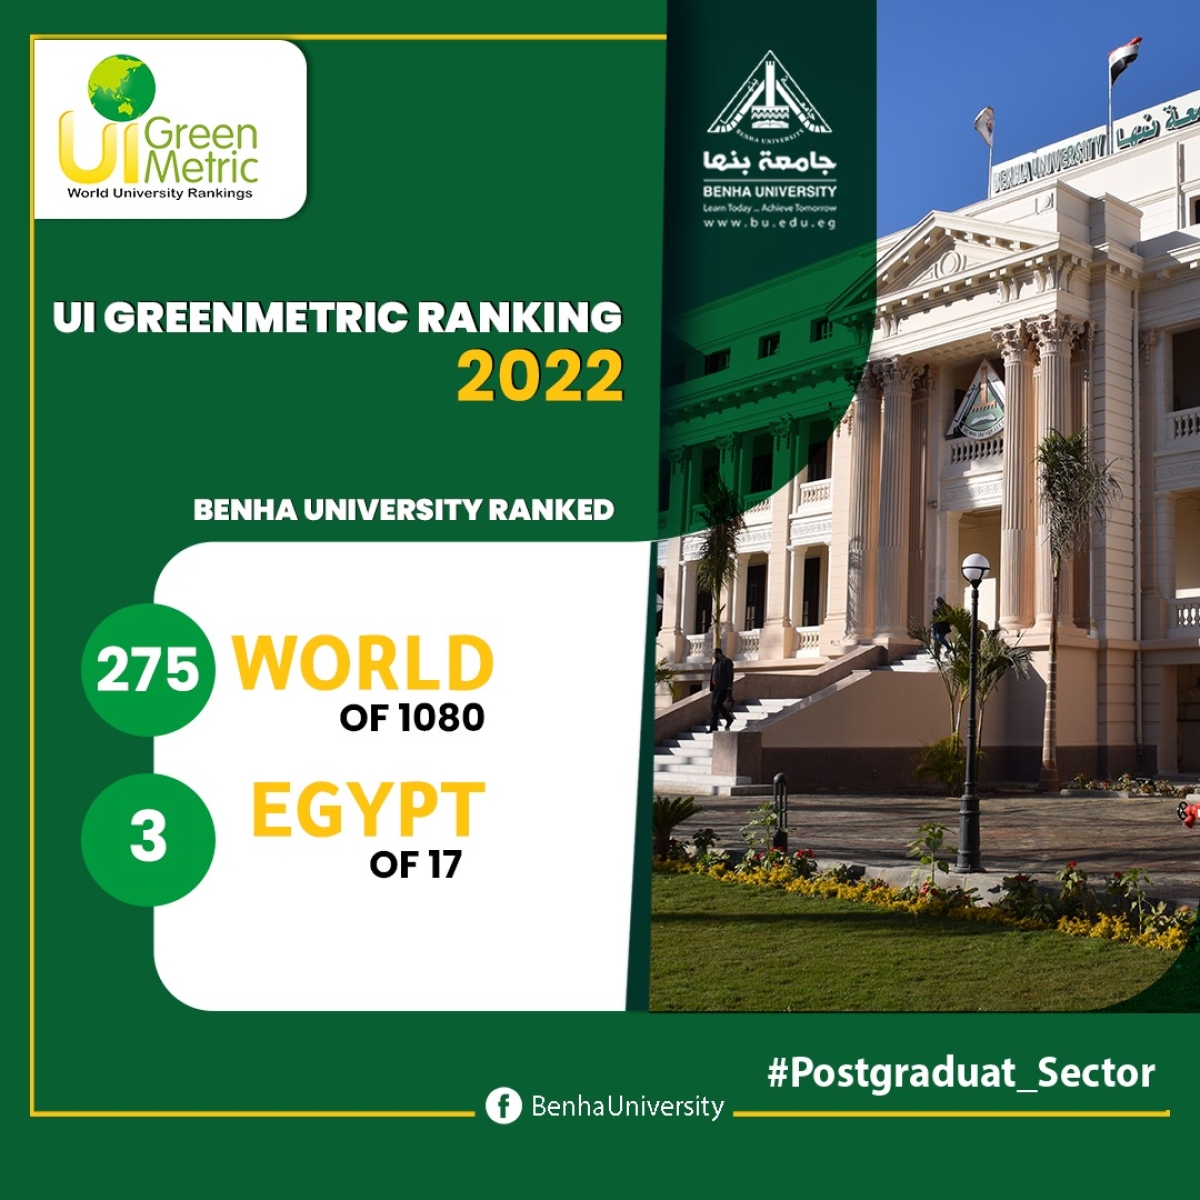 جامعة بنها ضمن أفضل خمس جامعات إفريقيا وتتقدم عالمياً بتصنيف الجامعات الخضراء 2022